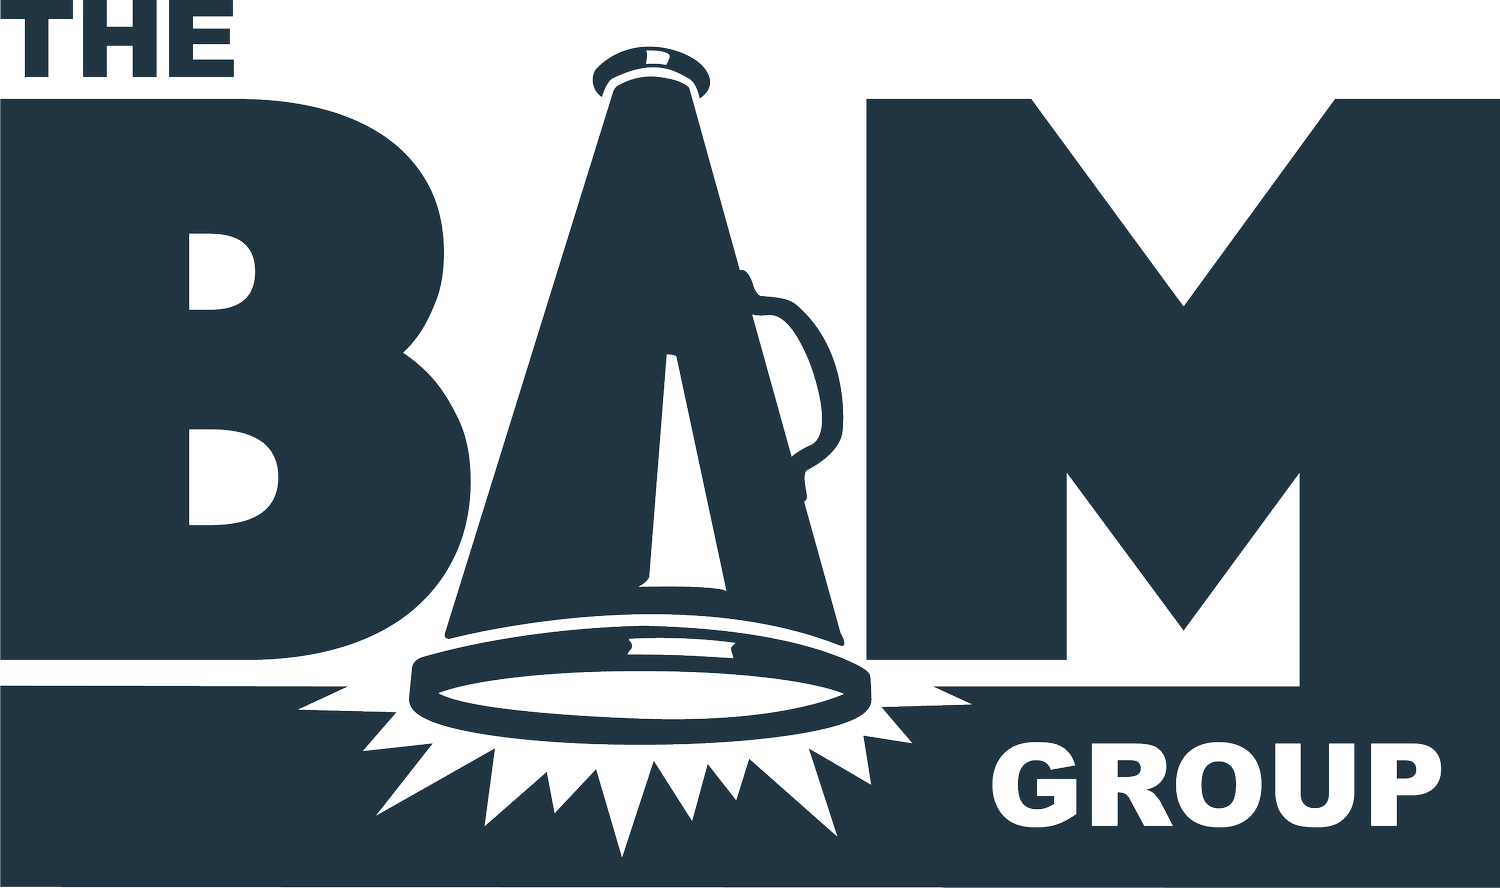 The BAM Group